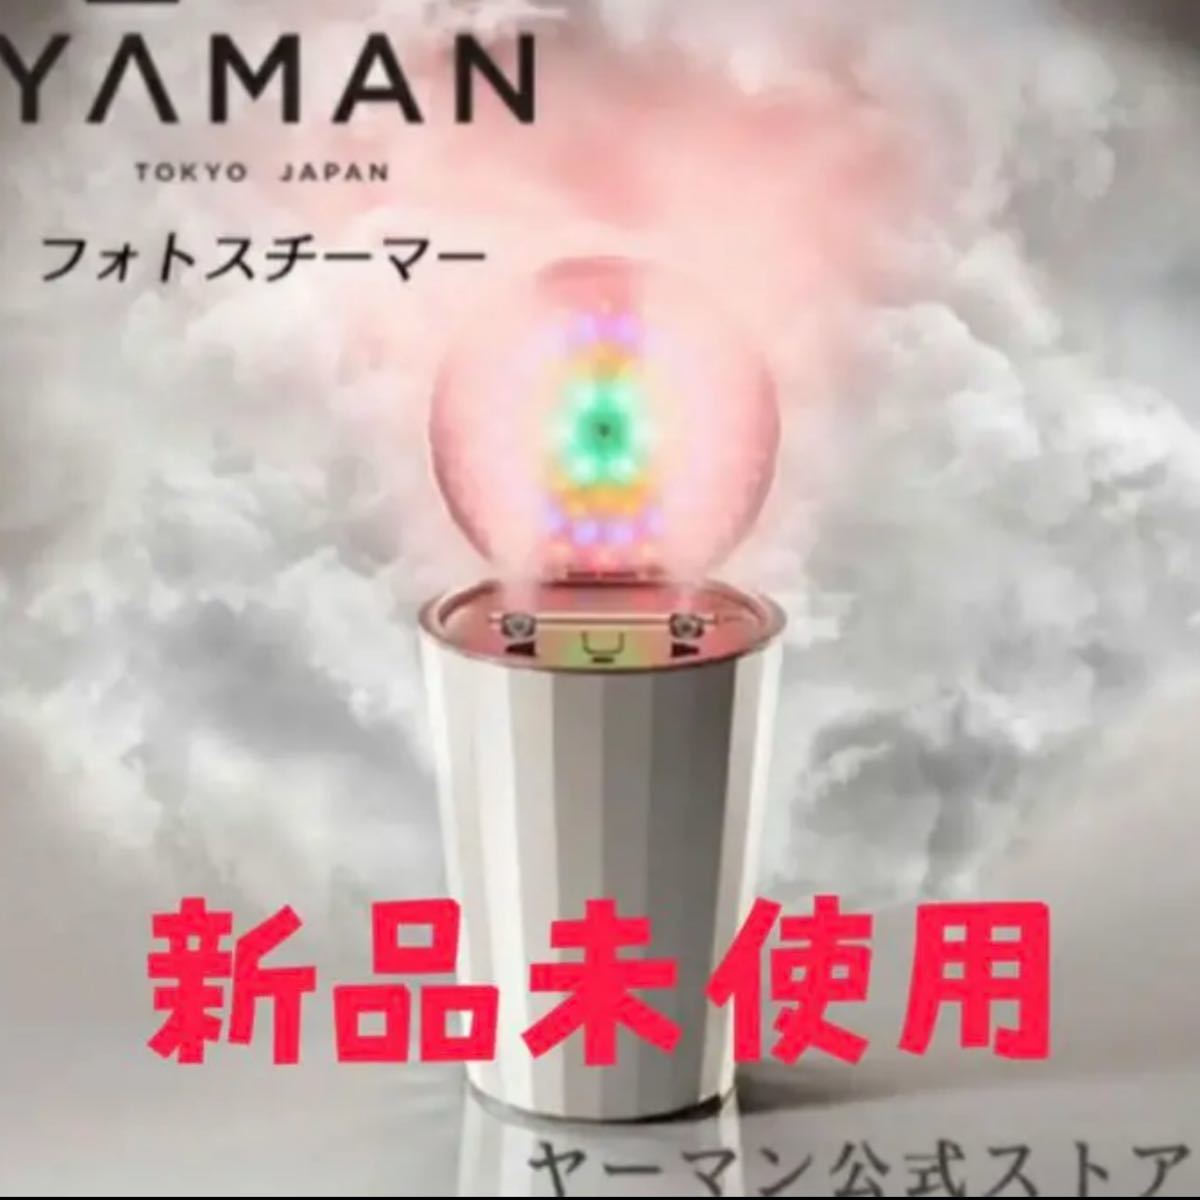 【新品未使用】LEDスチーム美顔器フォトスチーマー YA-MAN